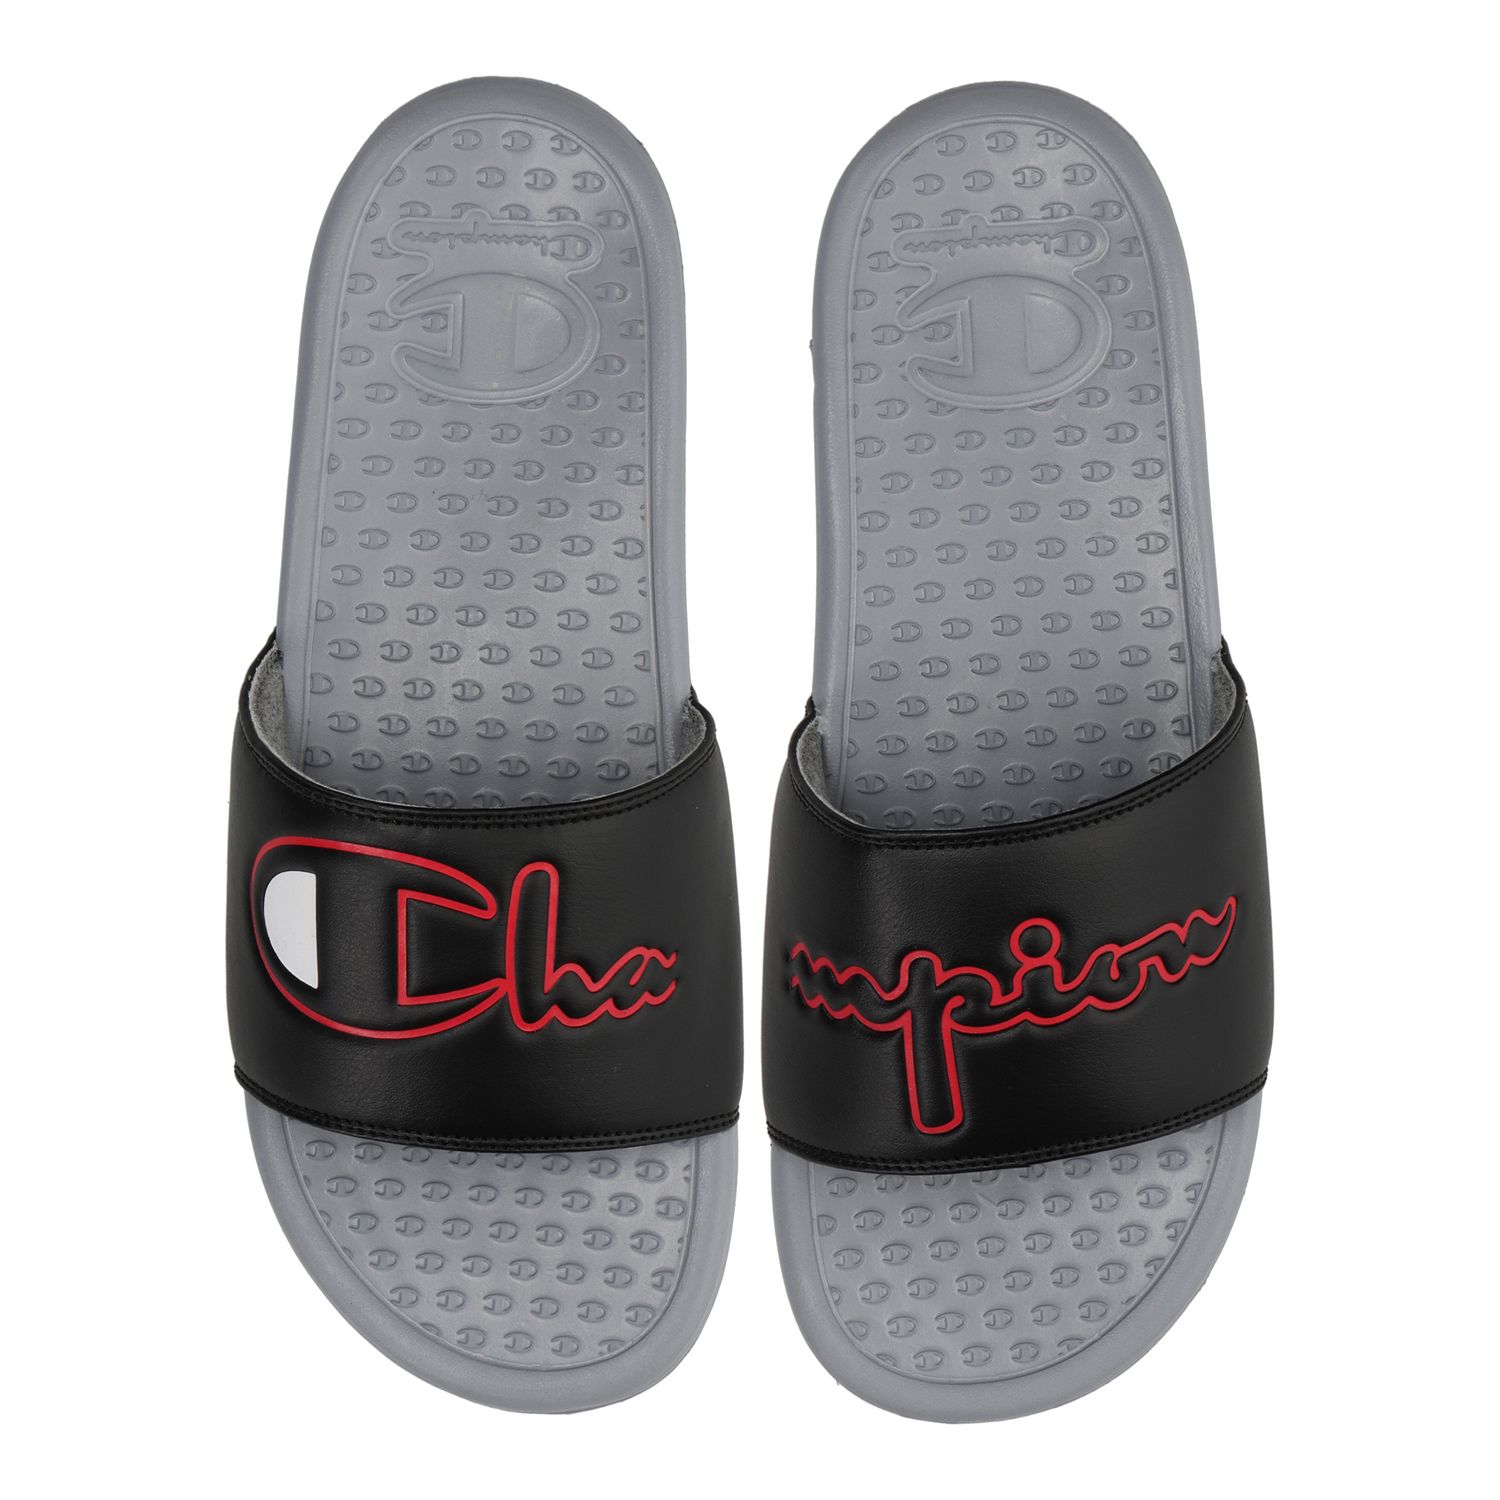 champion slide sandal